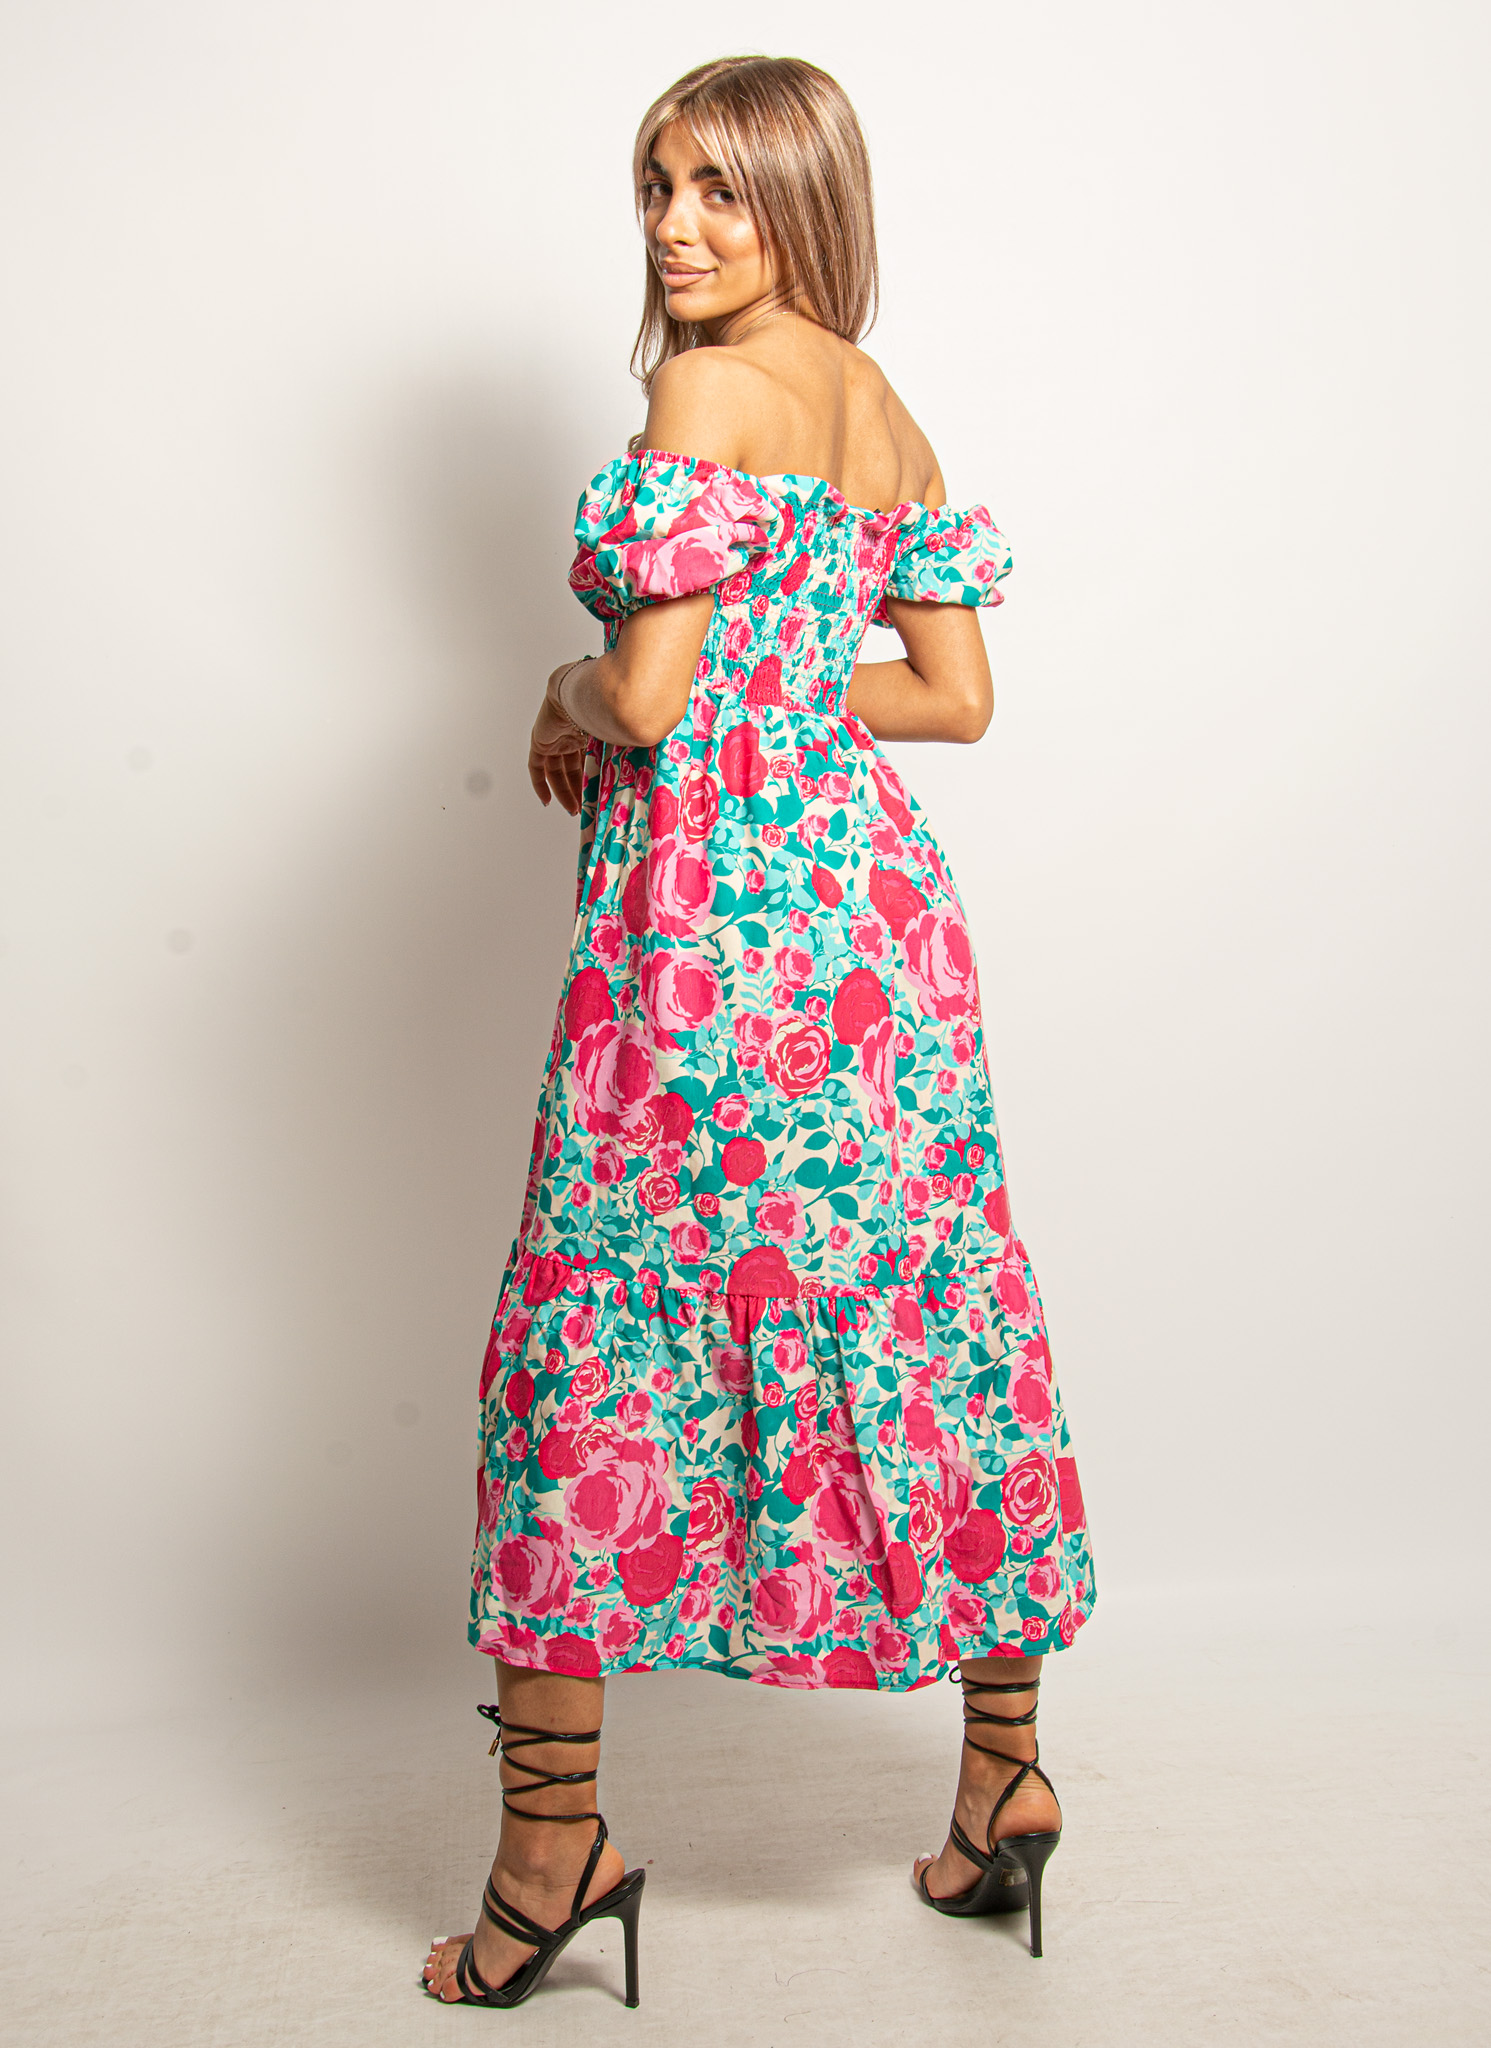 Φόρεμα Σφηκοφωλιά Floral Γαλάζιο-Φούξια – EllenBoutique